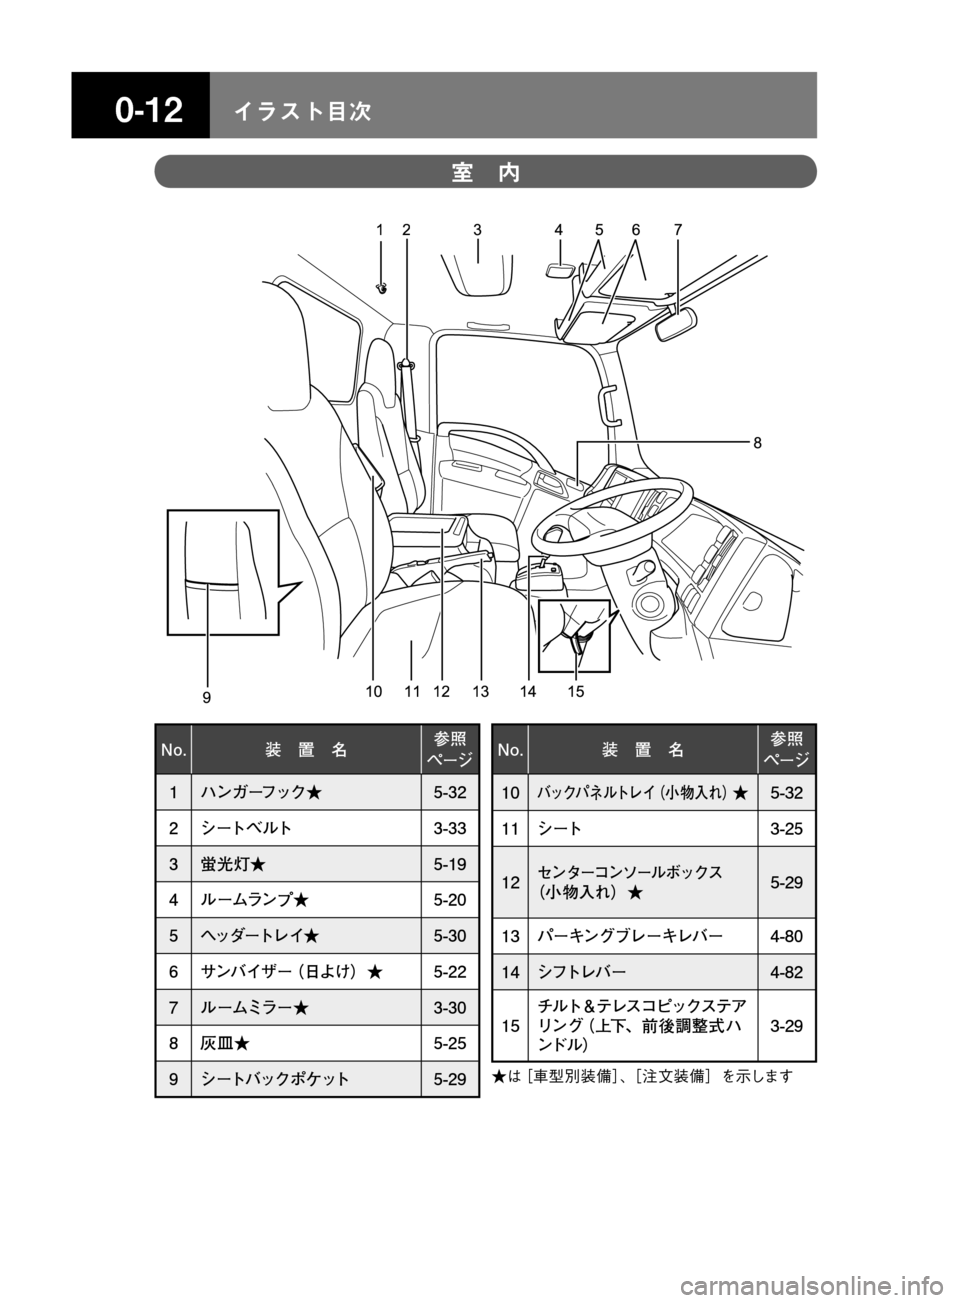 MAZDA MODEL TITAN 2013  タイタン｜取扱説明書 (in Japanese) ���� åµÄèÍ
15 14 12 13 11 1012 3 4 5 7
8 69
�/�P� 
